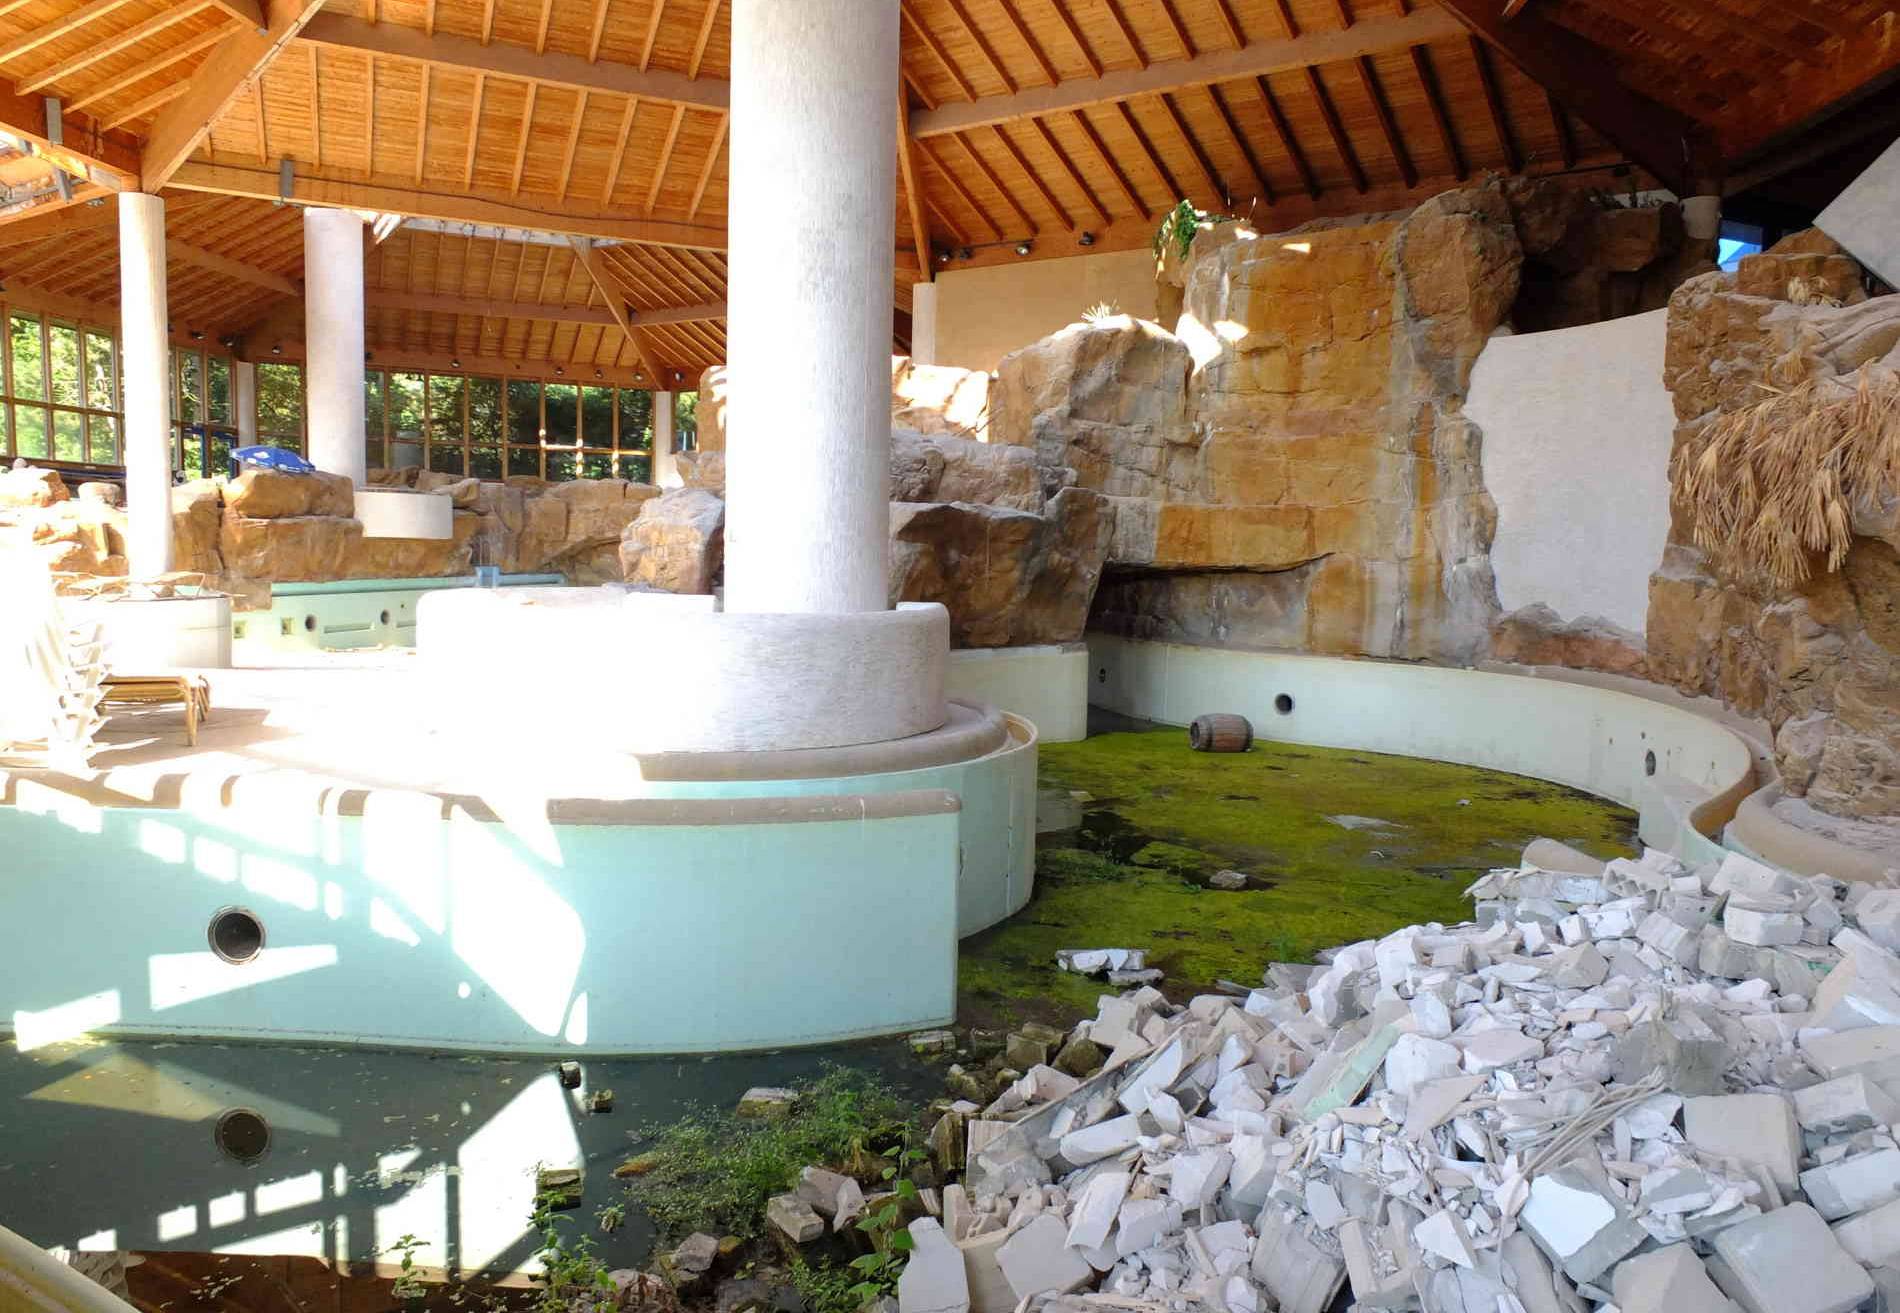  Kein kristallklares Wasser, nur grüne Bracke füllt die Becken des ehemaligen Spaßbades Bergische Sonne. Bis 2020 plant die Stadt den Abriss des Gebäudes.  